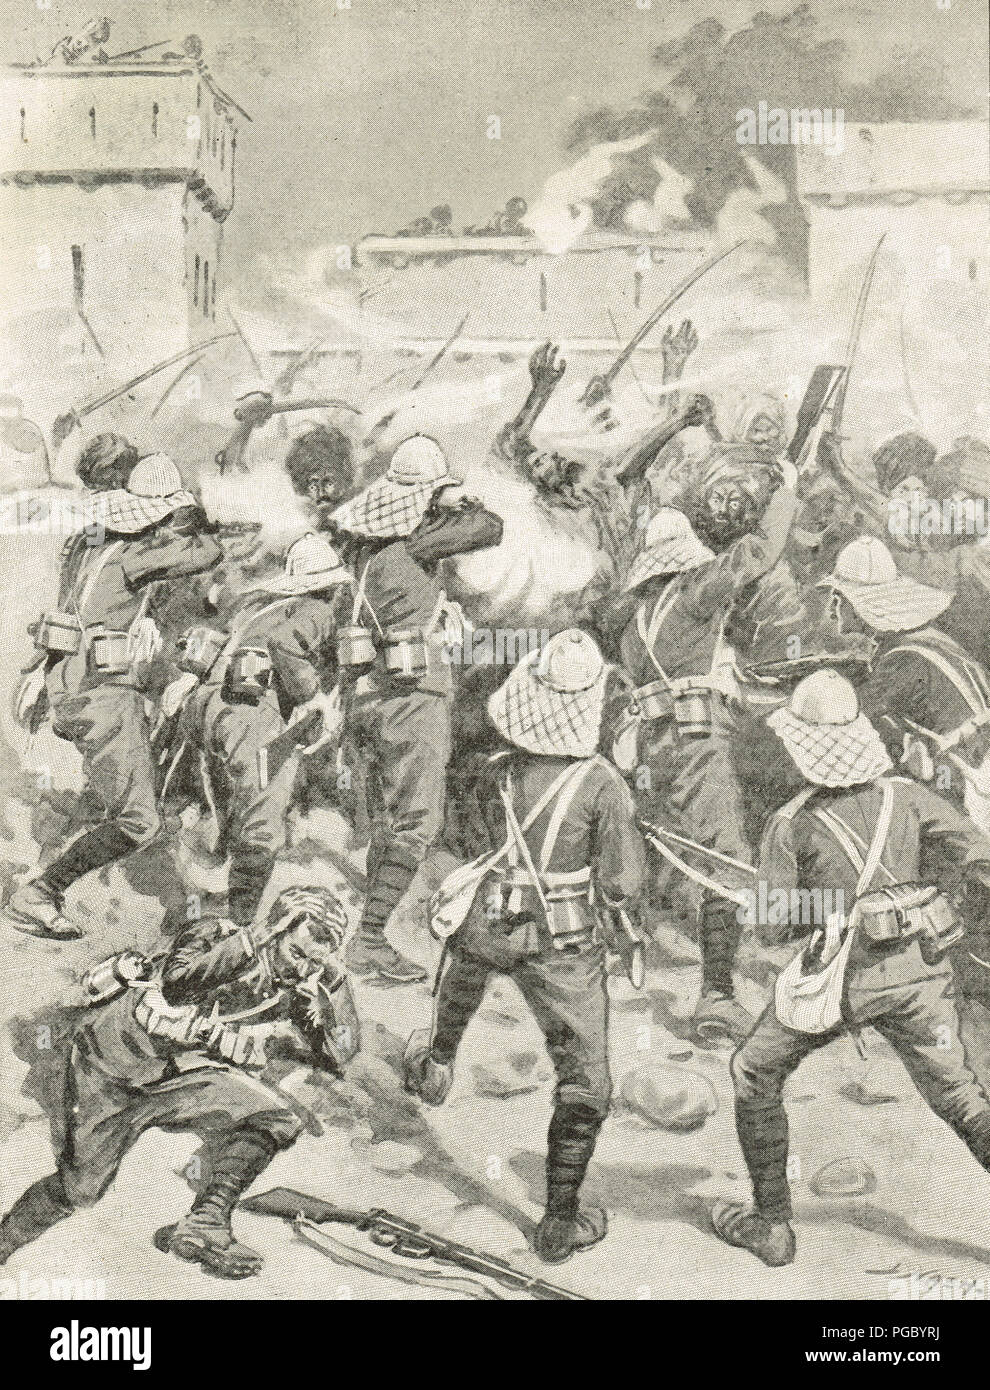 Soldats britanniques l'élimination d'un village de Mohmand, campagne de Mohmand de 1897-98 Banque D'Images